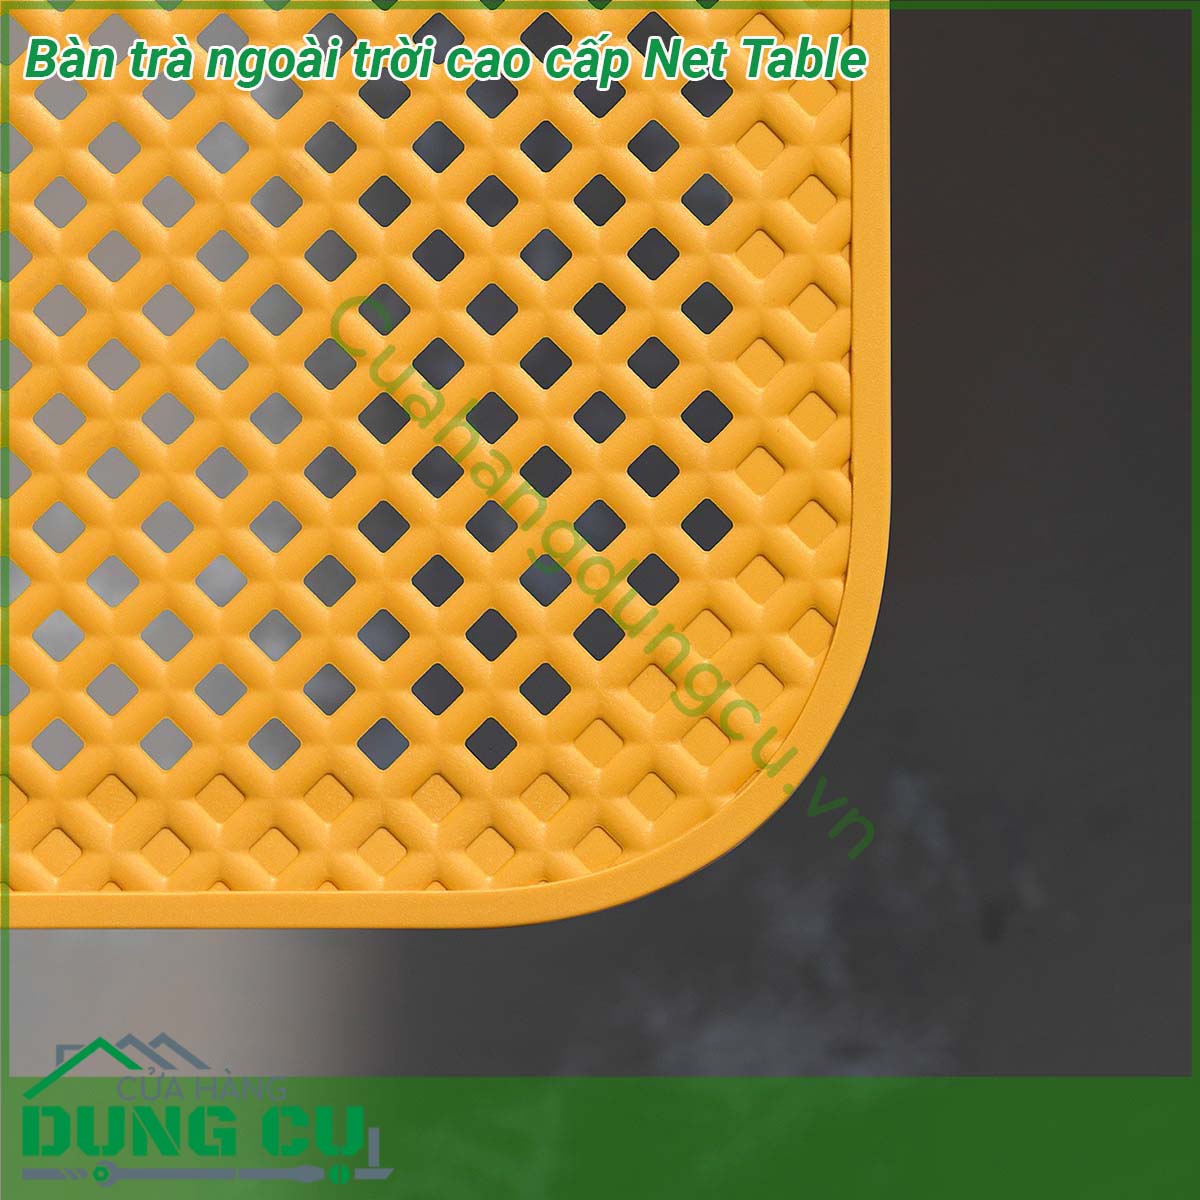 Bàn trà ngoài trời cao cấp Net Table được làm bằng nhựa polypropylene sợi thủy tinh chống chịu thời tiết tia cực tím của NARDI của Ý Thiết kế bàn thấp thanh lịch với mặt trên hình chữ nhật có hoa văn đục lỗ có khả năng thoát nước mưa hiệu quả